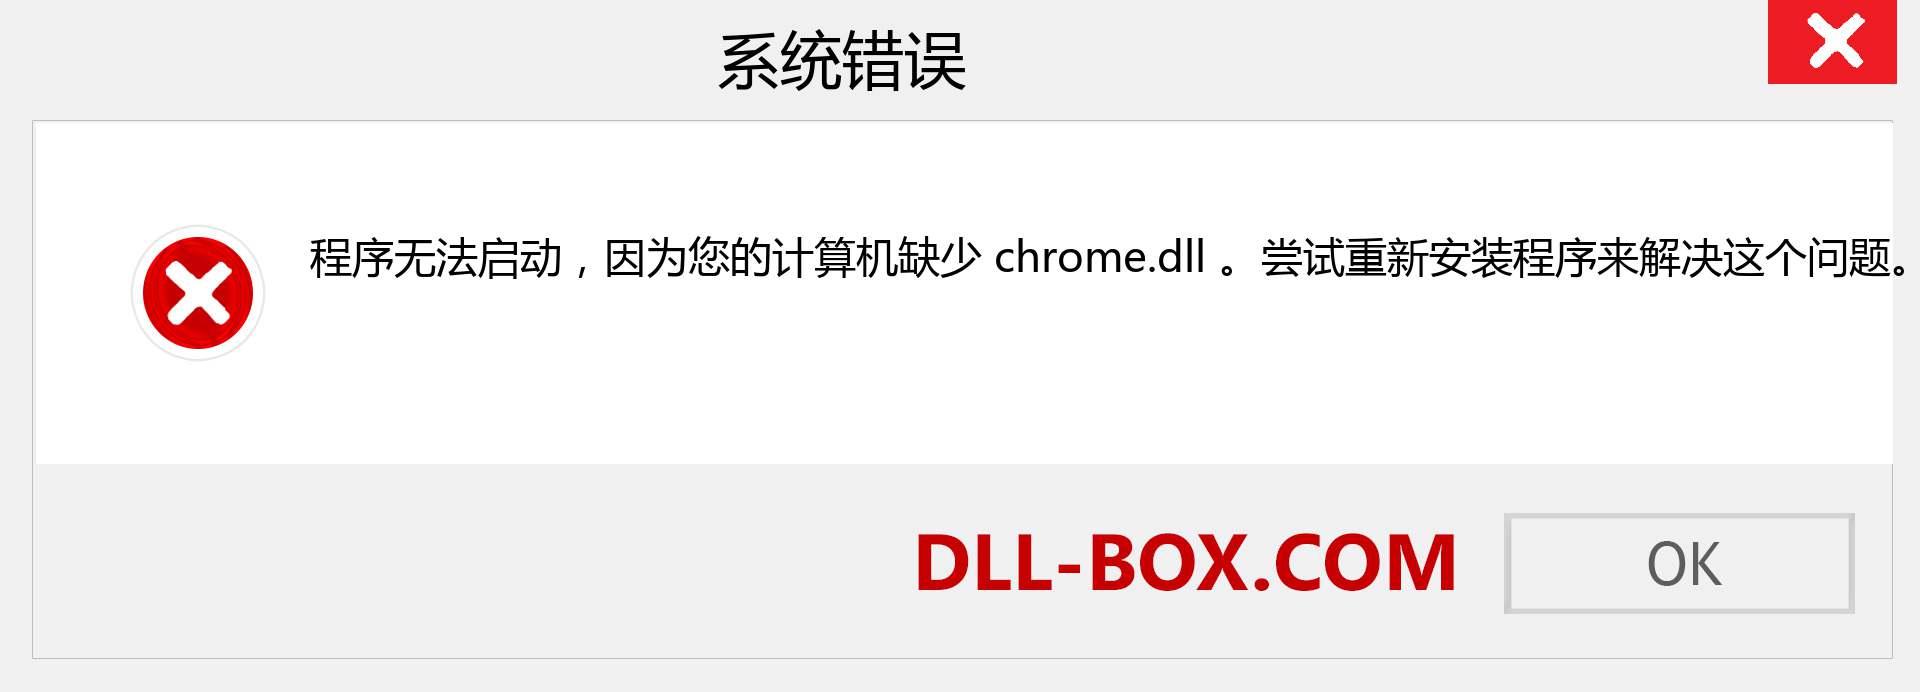 chrome.dll 文件丢失？。 适用于 Windows 7、8、10 的下载 - 修复 Windows、照片、图像上的 chrome dll 丢失错误